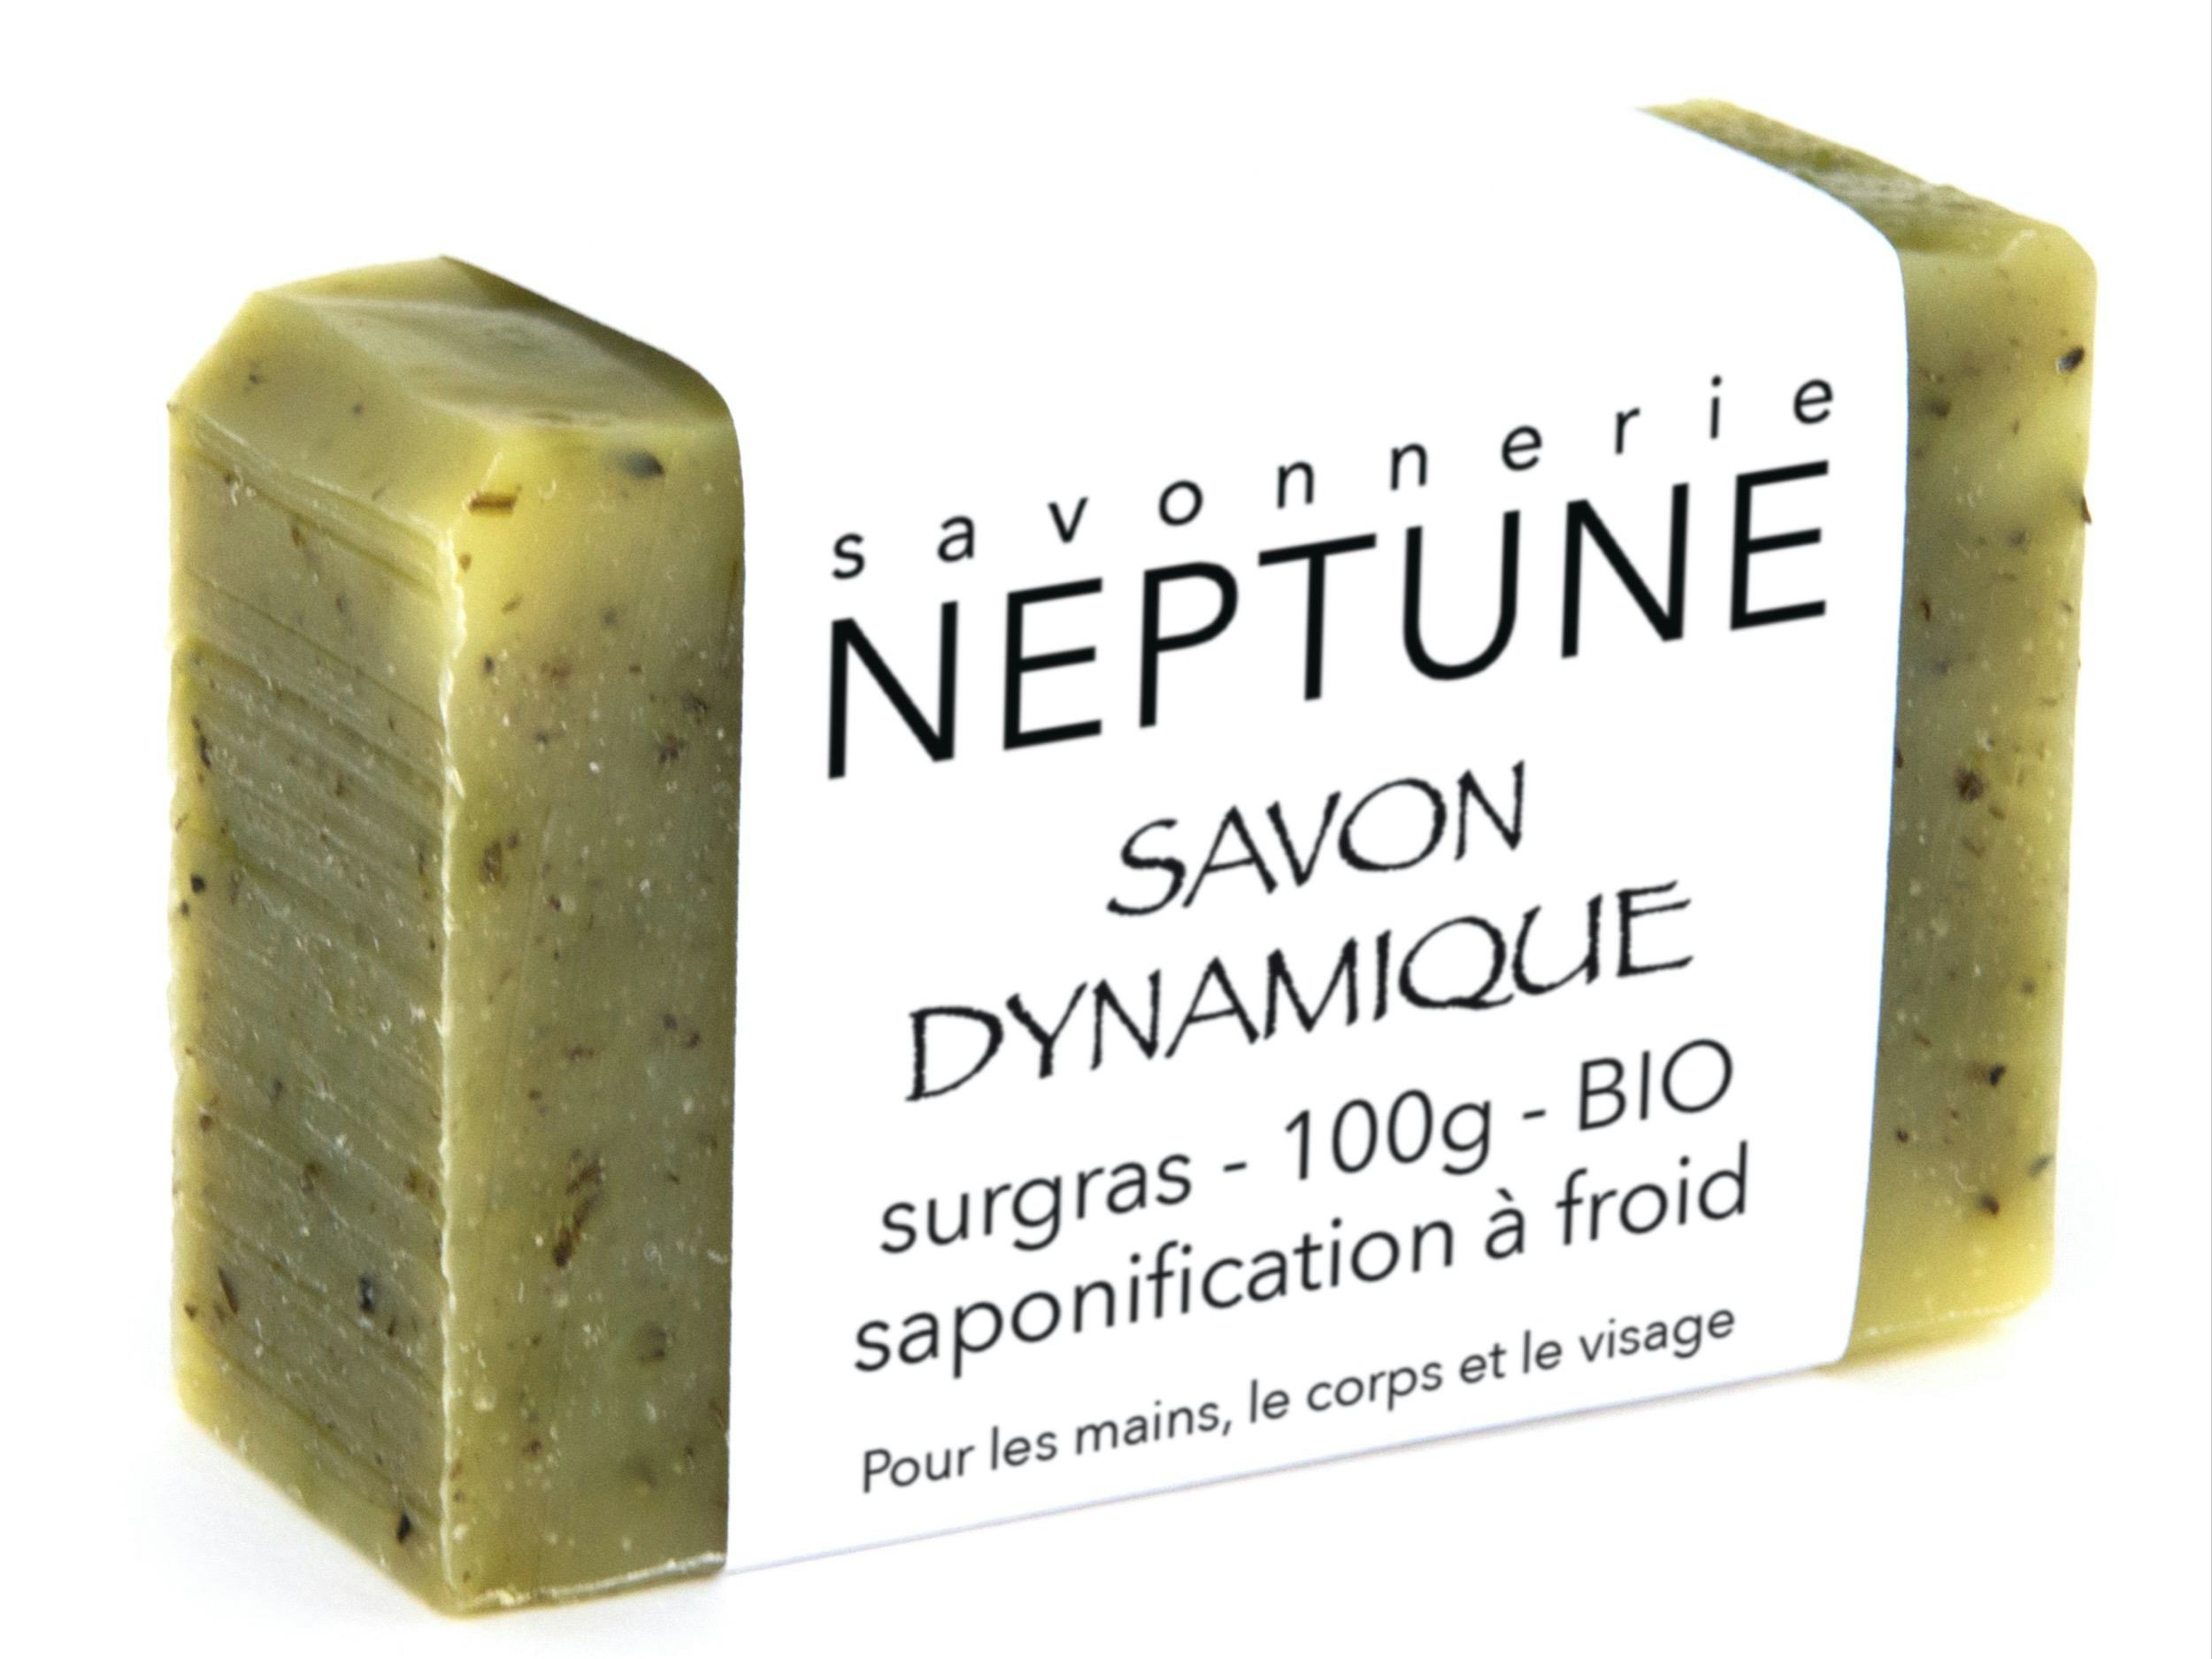 Dynamic soap - organic, Savonnerie NEPTUNE, Crésuz, image 2 | Mimelis